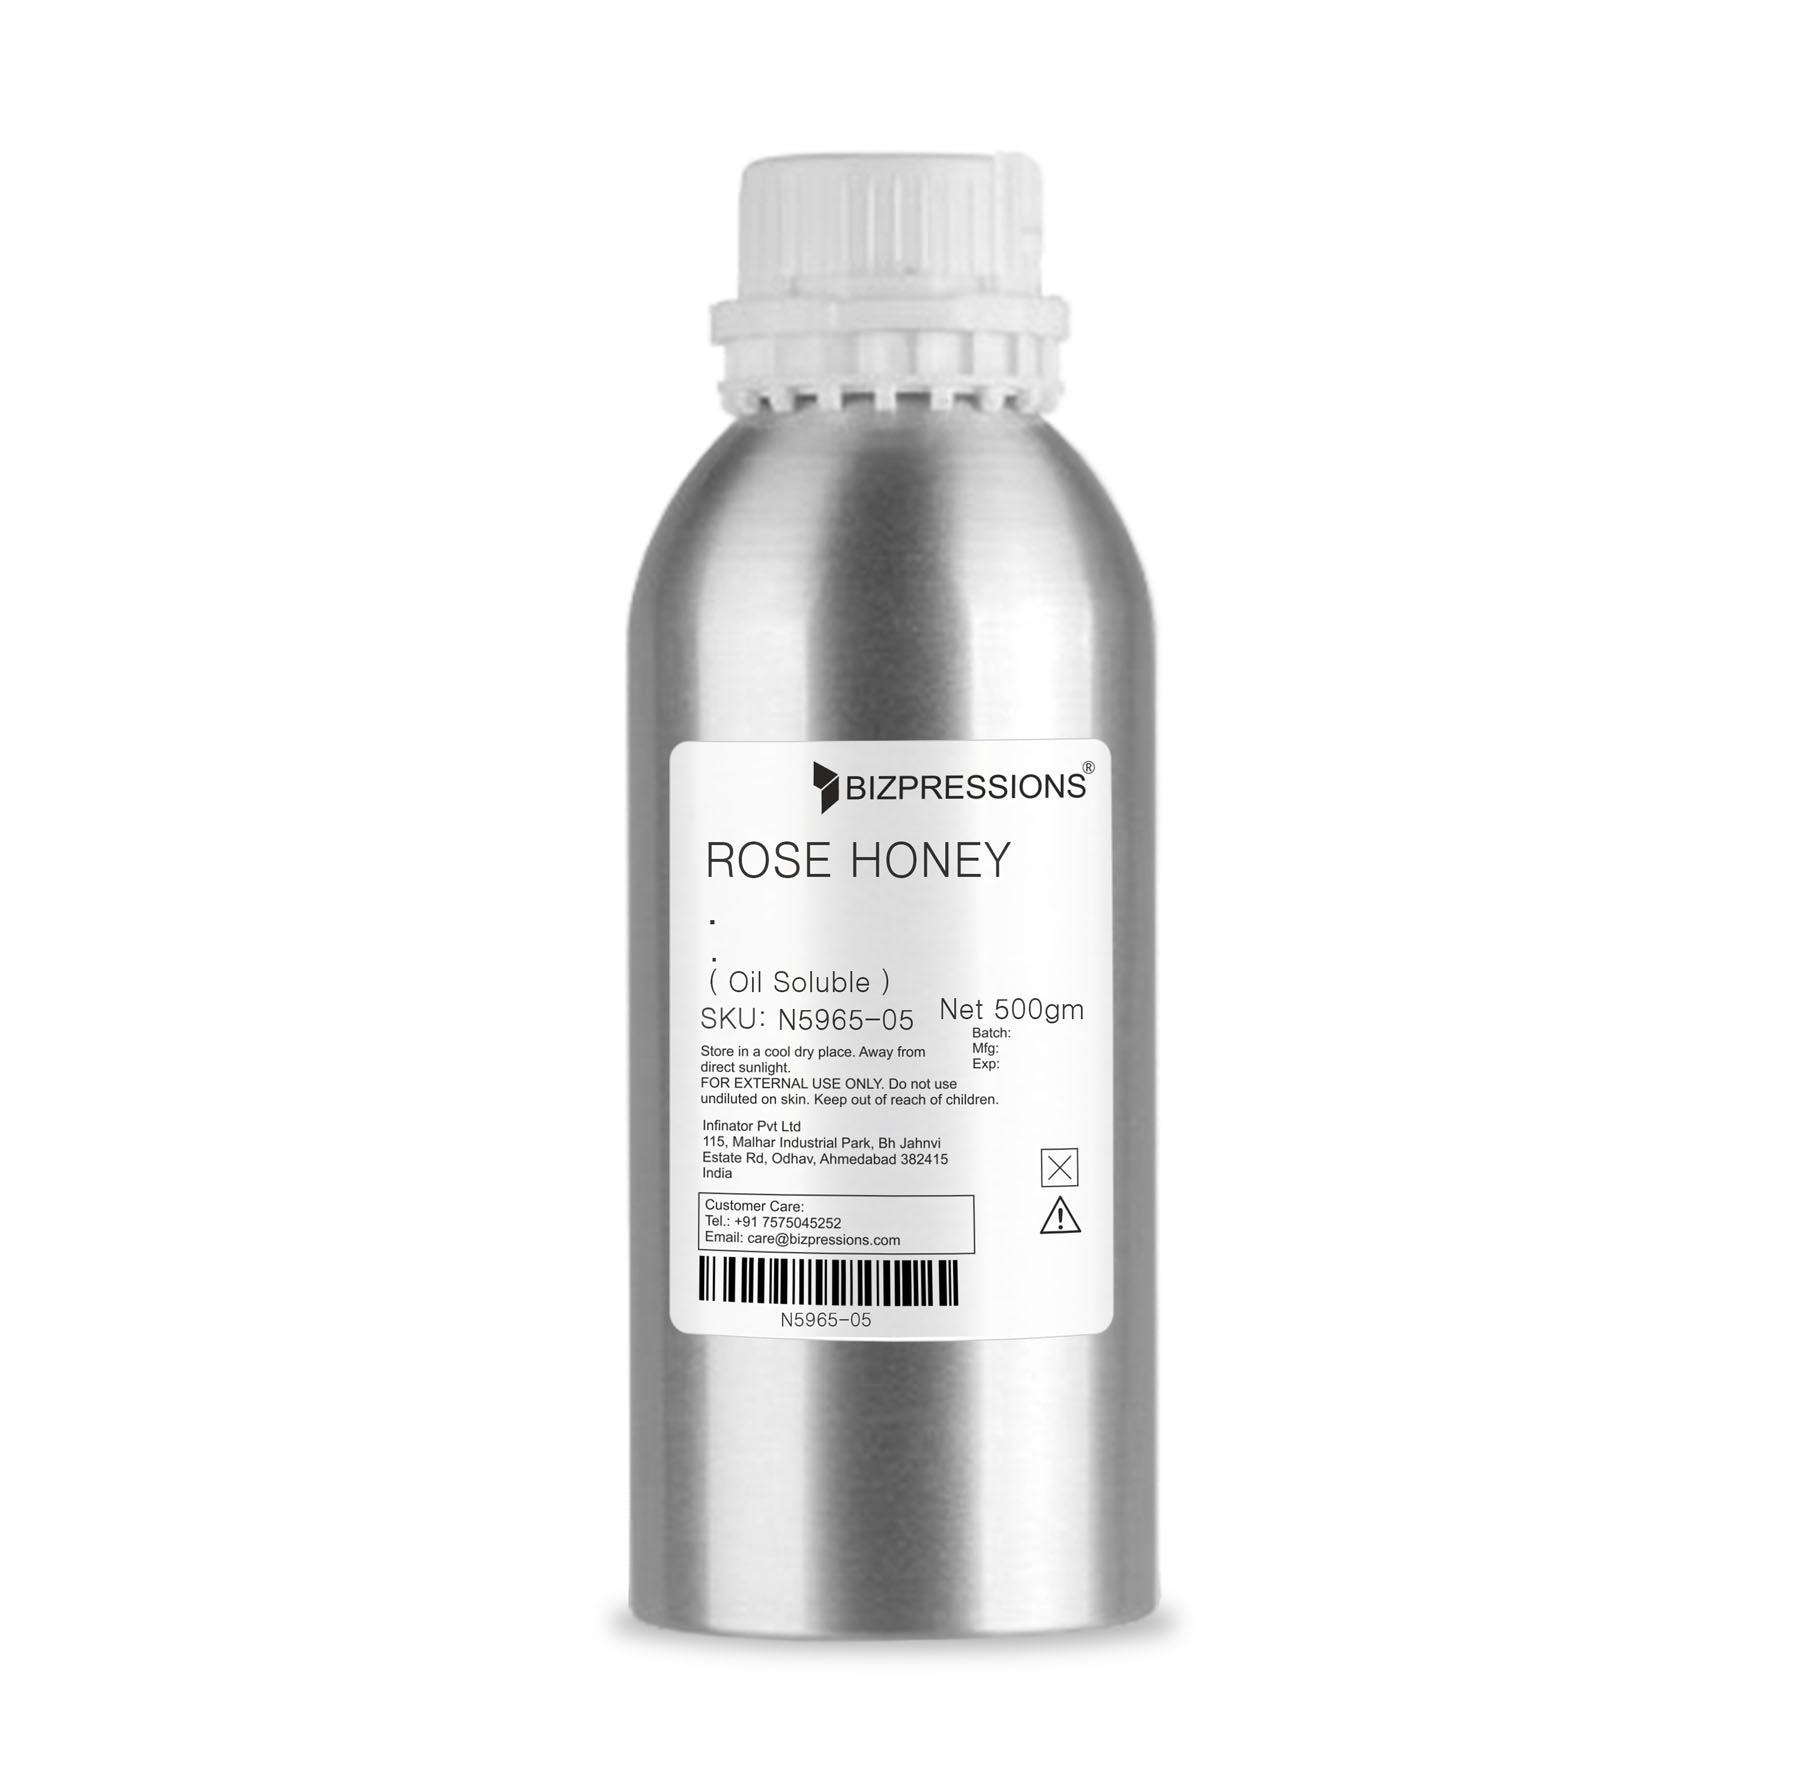 ROSE HONEY - Fragrance ( Oil Soluble ) - 500 gm